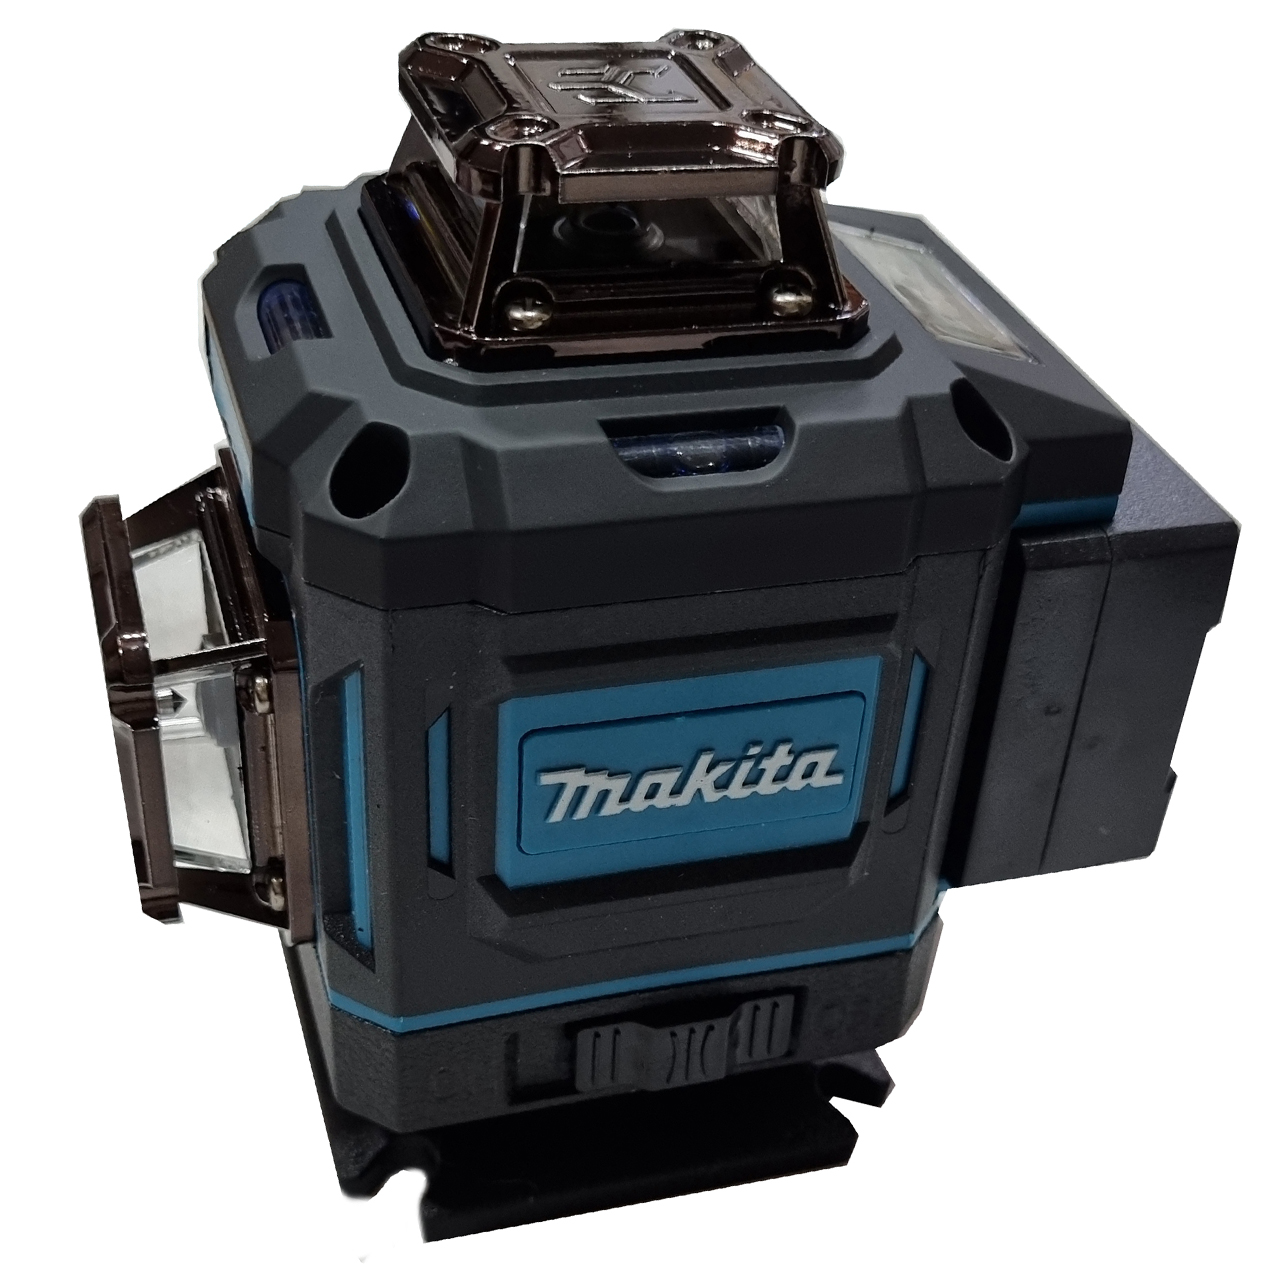 نکته خرید - قیمت روز تراز لیزری ماکیتا مدل 4 بعدی کد Makita 360-4D خرید